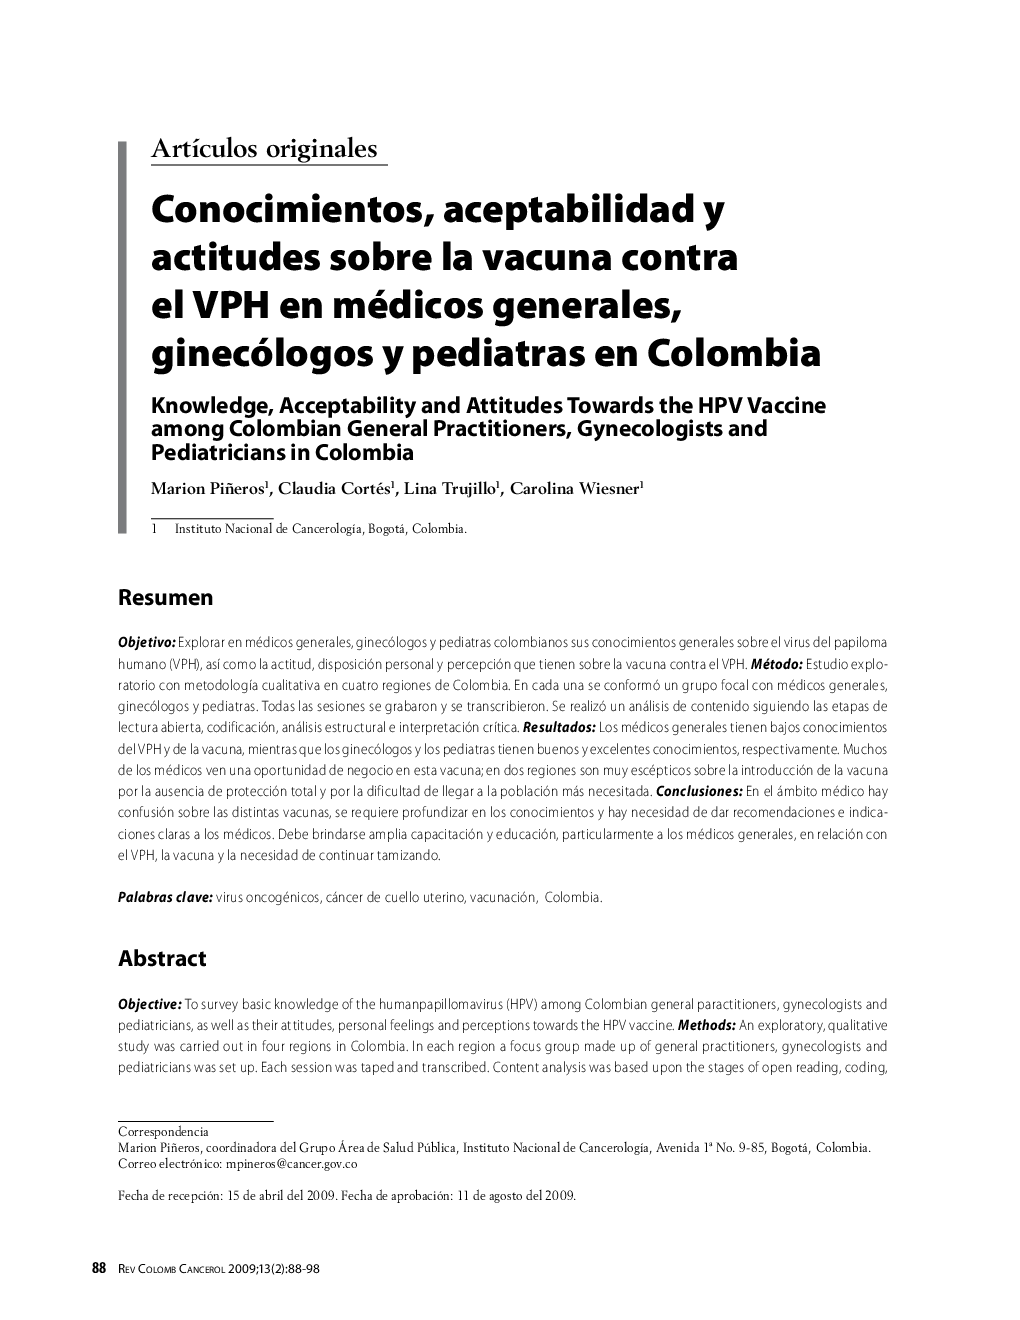 Conocimientos, aceptabilidad y actitudes sobre la vacuna contra el VPH en médicos generales, ginecólogos y pediatras en ColombiaKnowledge, Acceptability and Attitudes Towards the HPV Vaccine among Colombian General Practitioners, Gynecologists and Pedia